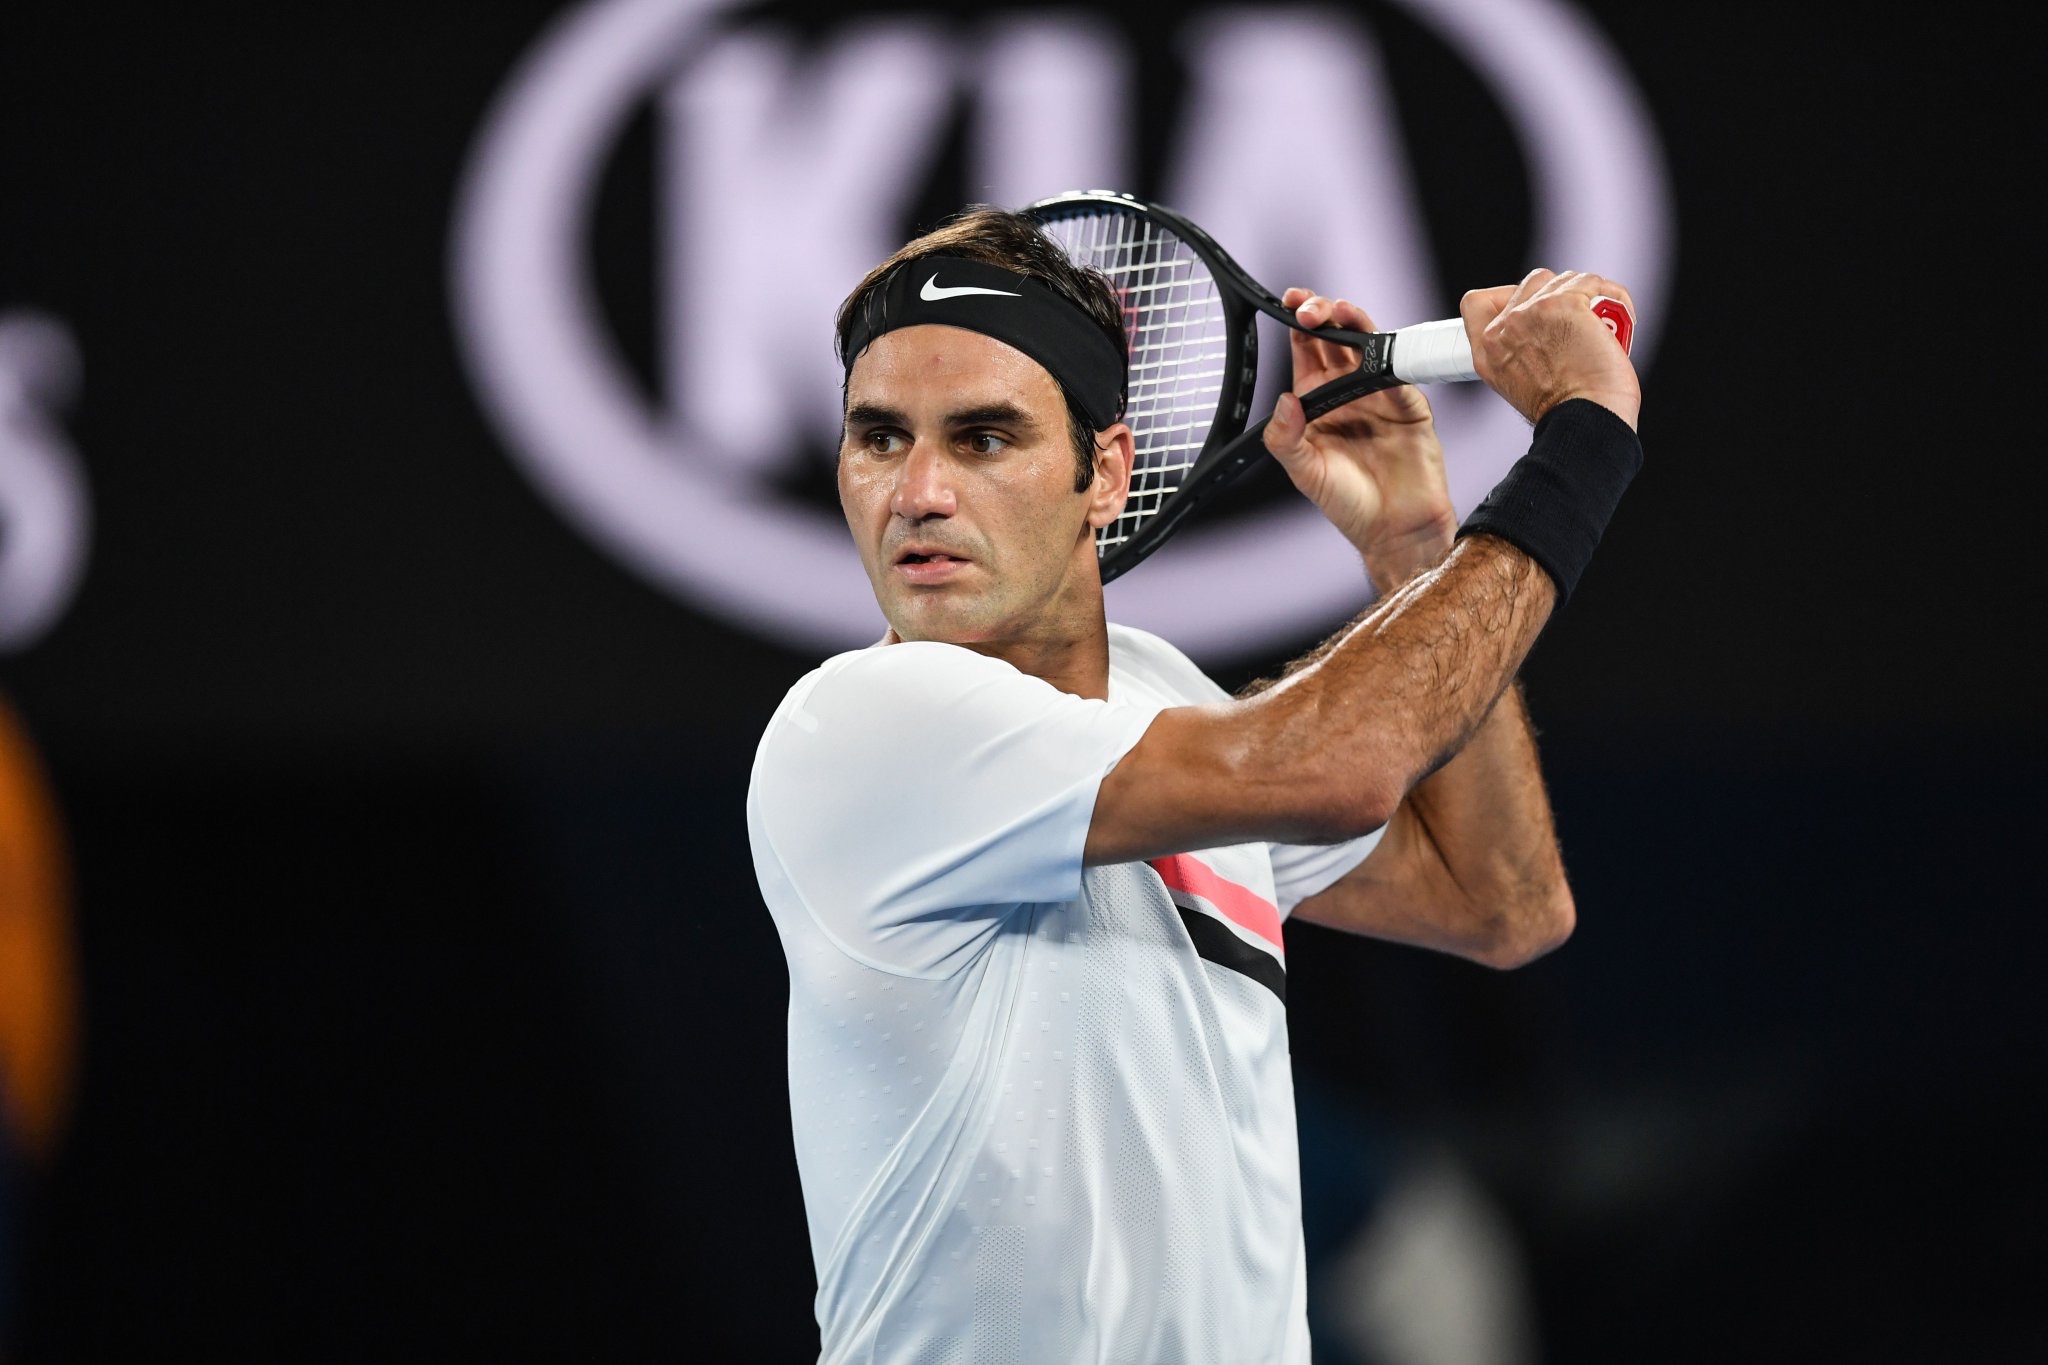 Roger Federer 2018 Australian Open - Federer Rolls into Australian Open Fourth Round